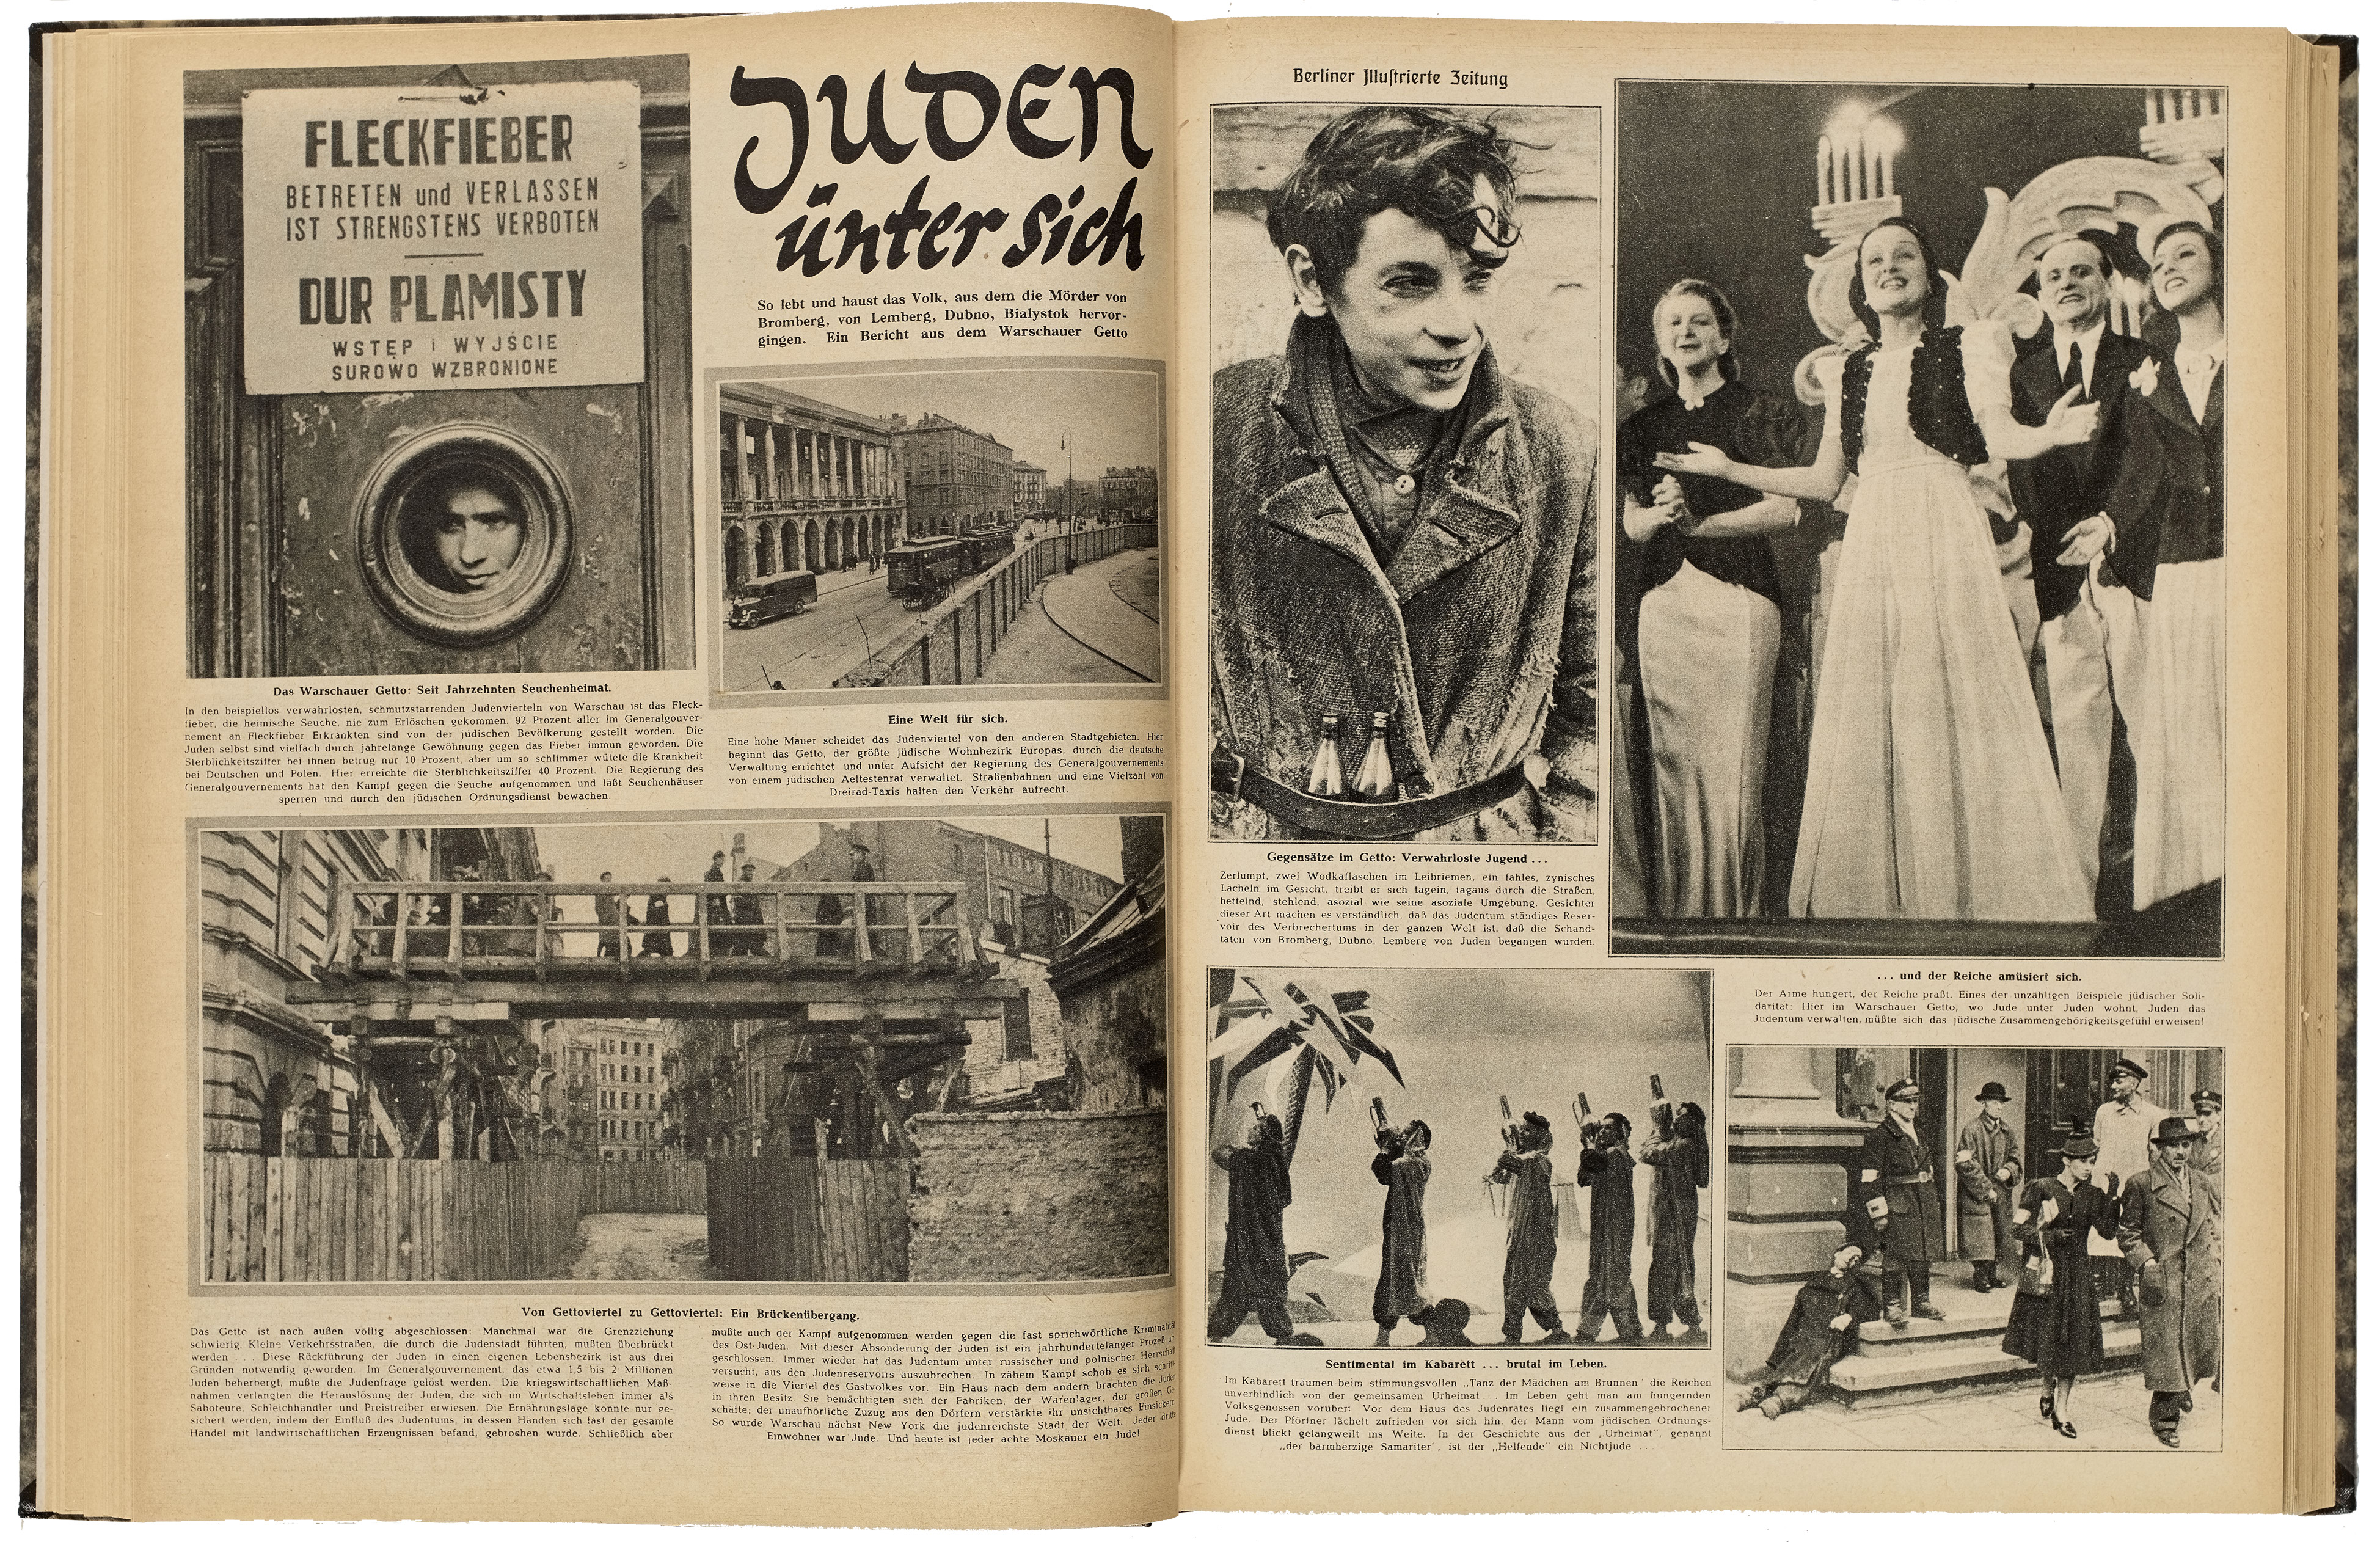 [Druckgut: "Juden unter sich", Antisemitischer Artikel in der Berliner Illustrierten Zeitung, 1941]